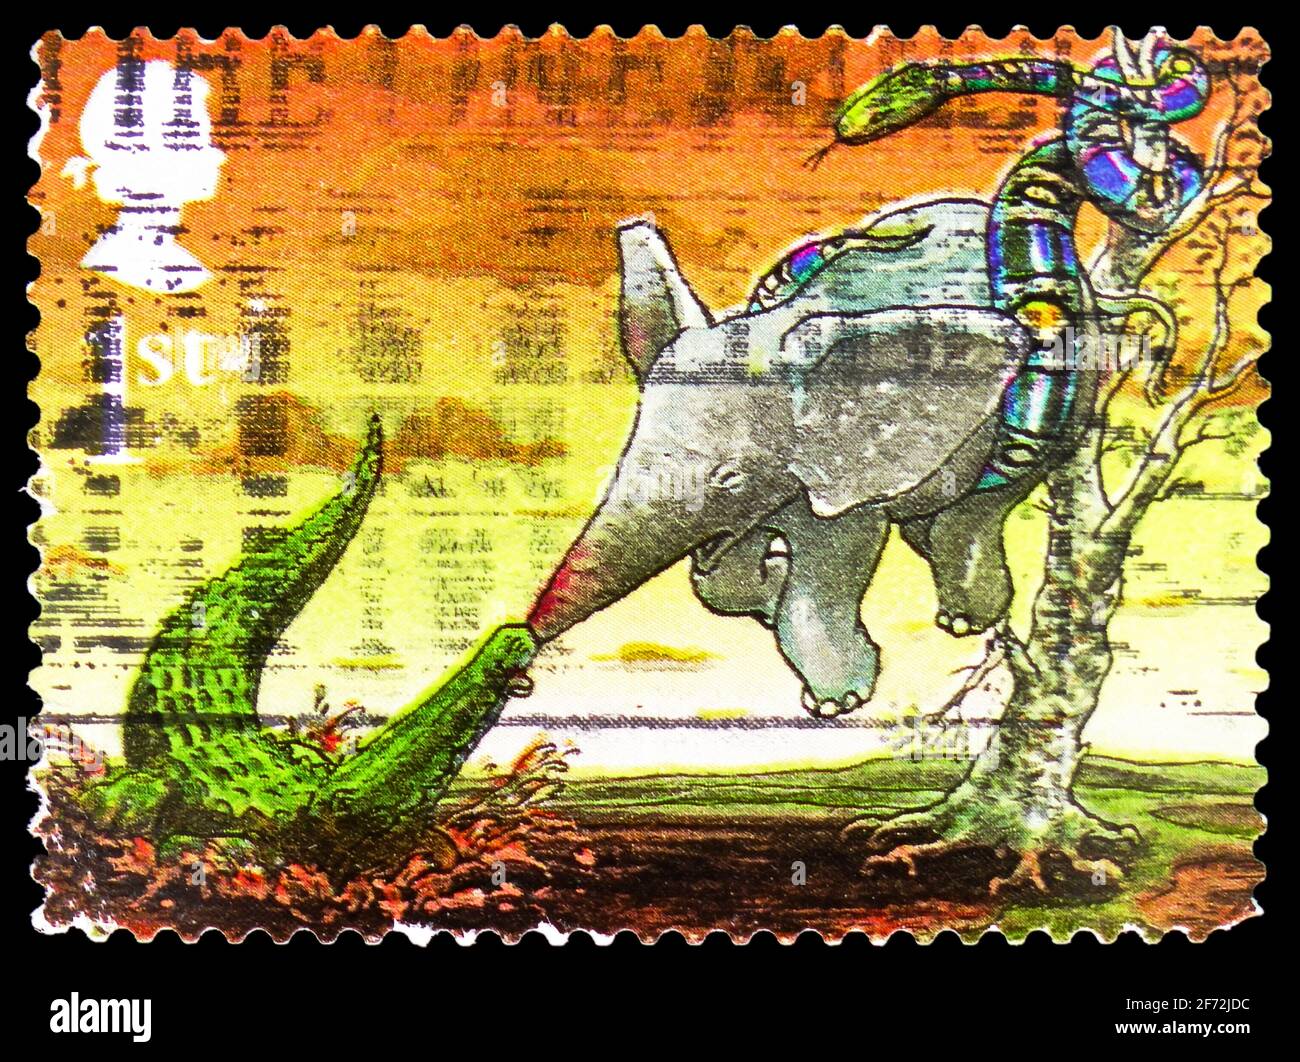 MOSCOU, RUSSIE - 22 DÉCEMBRE 2020: Timbre-poste imprimé au Royaume-Uni montre 'l'enfant de l'éléphant', auteurs - Rudyard série Kipling, vers 2002 Banque D'Images